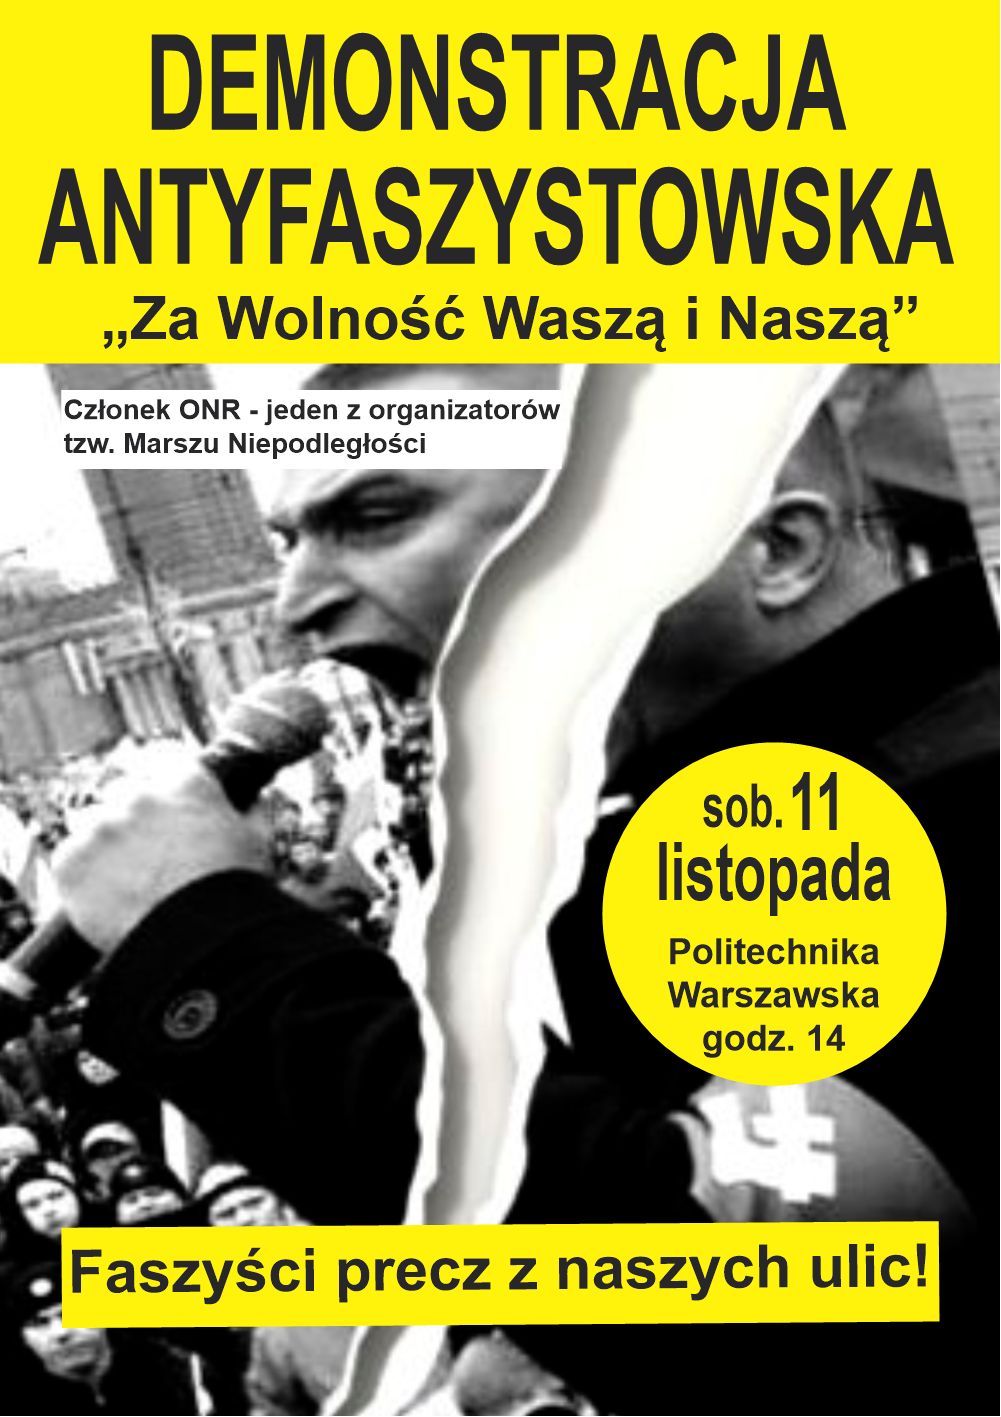  Demonstracja Antyfaszystowska 11 listopada 2017 – plakat” width=